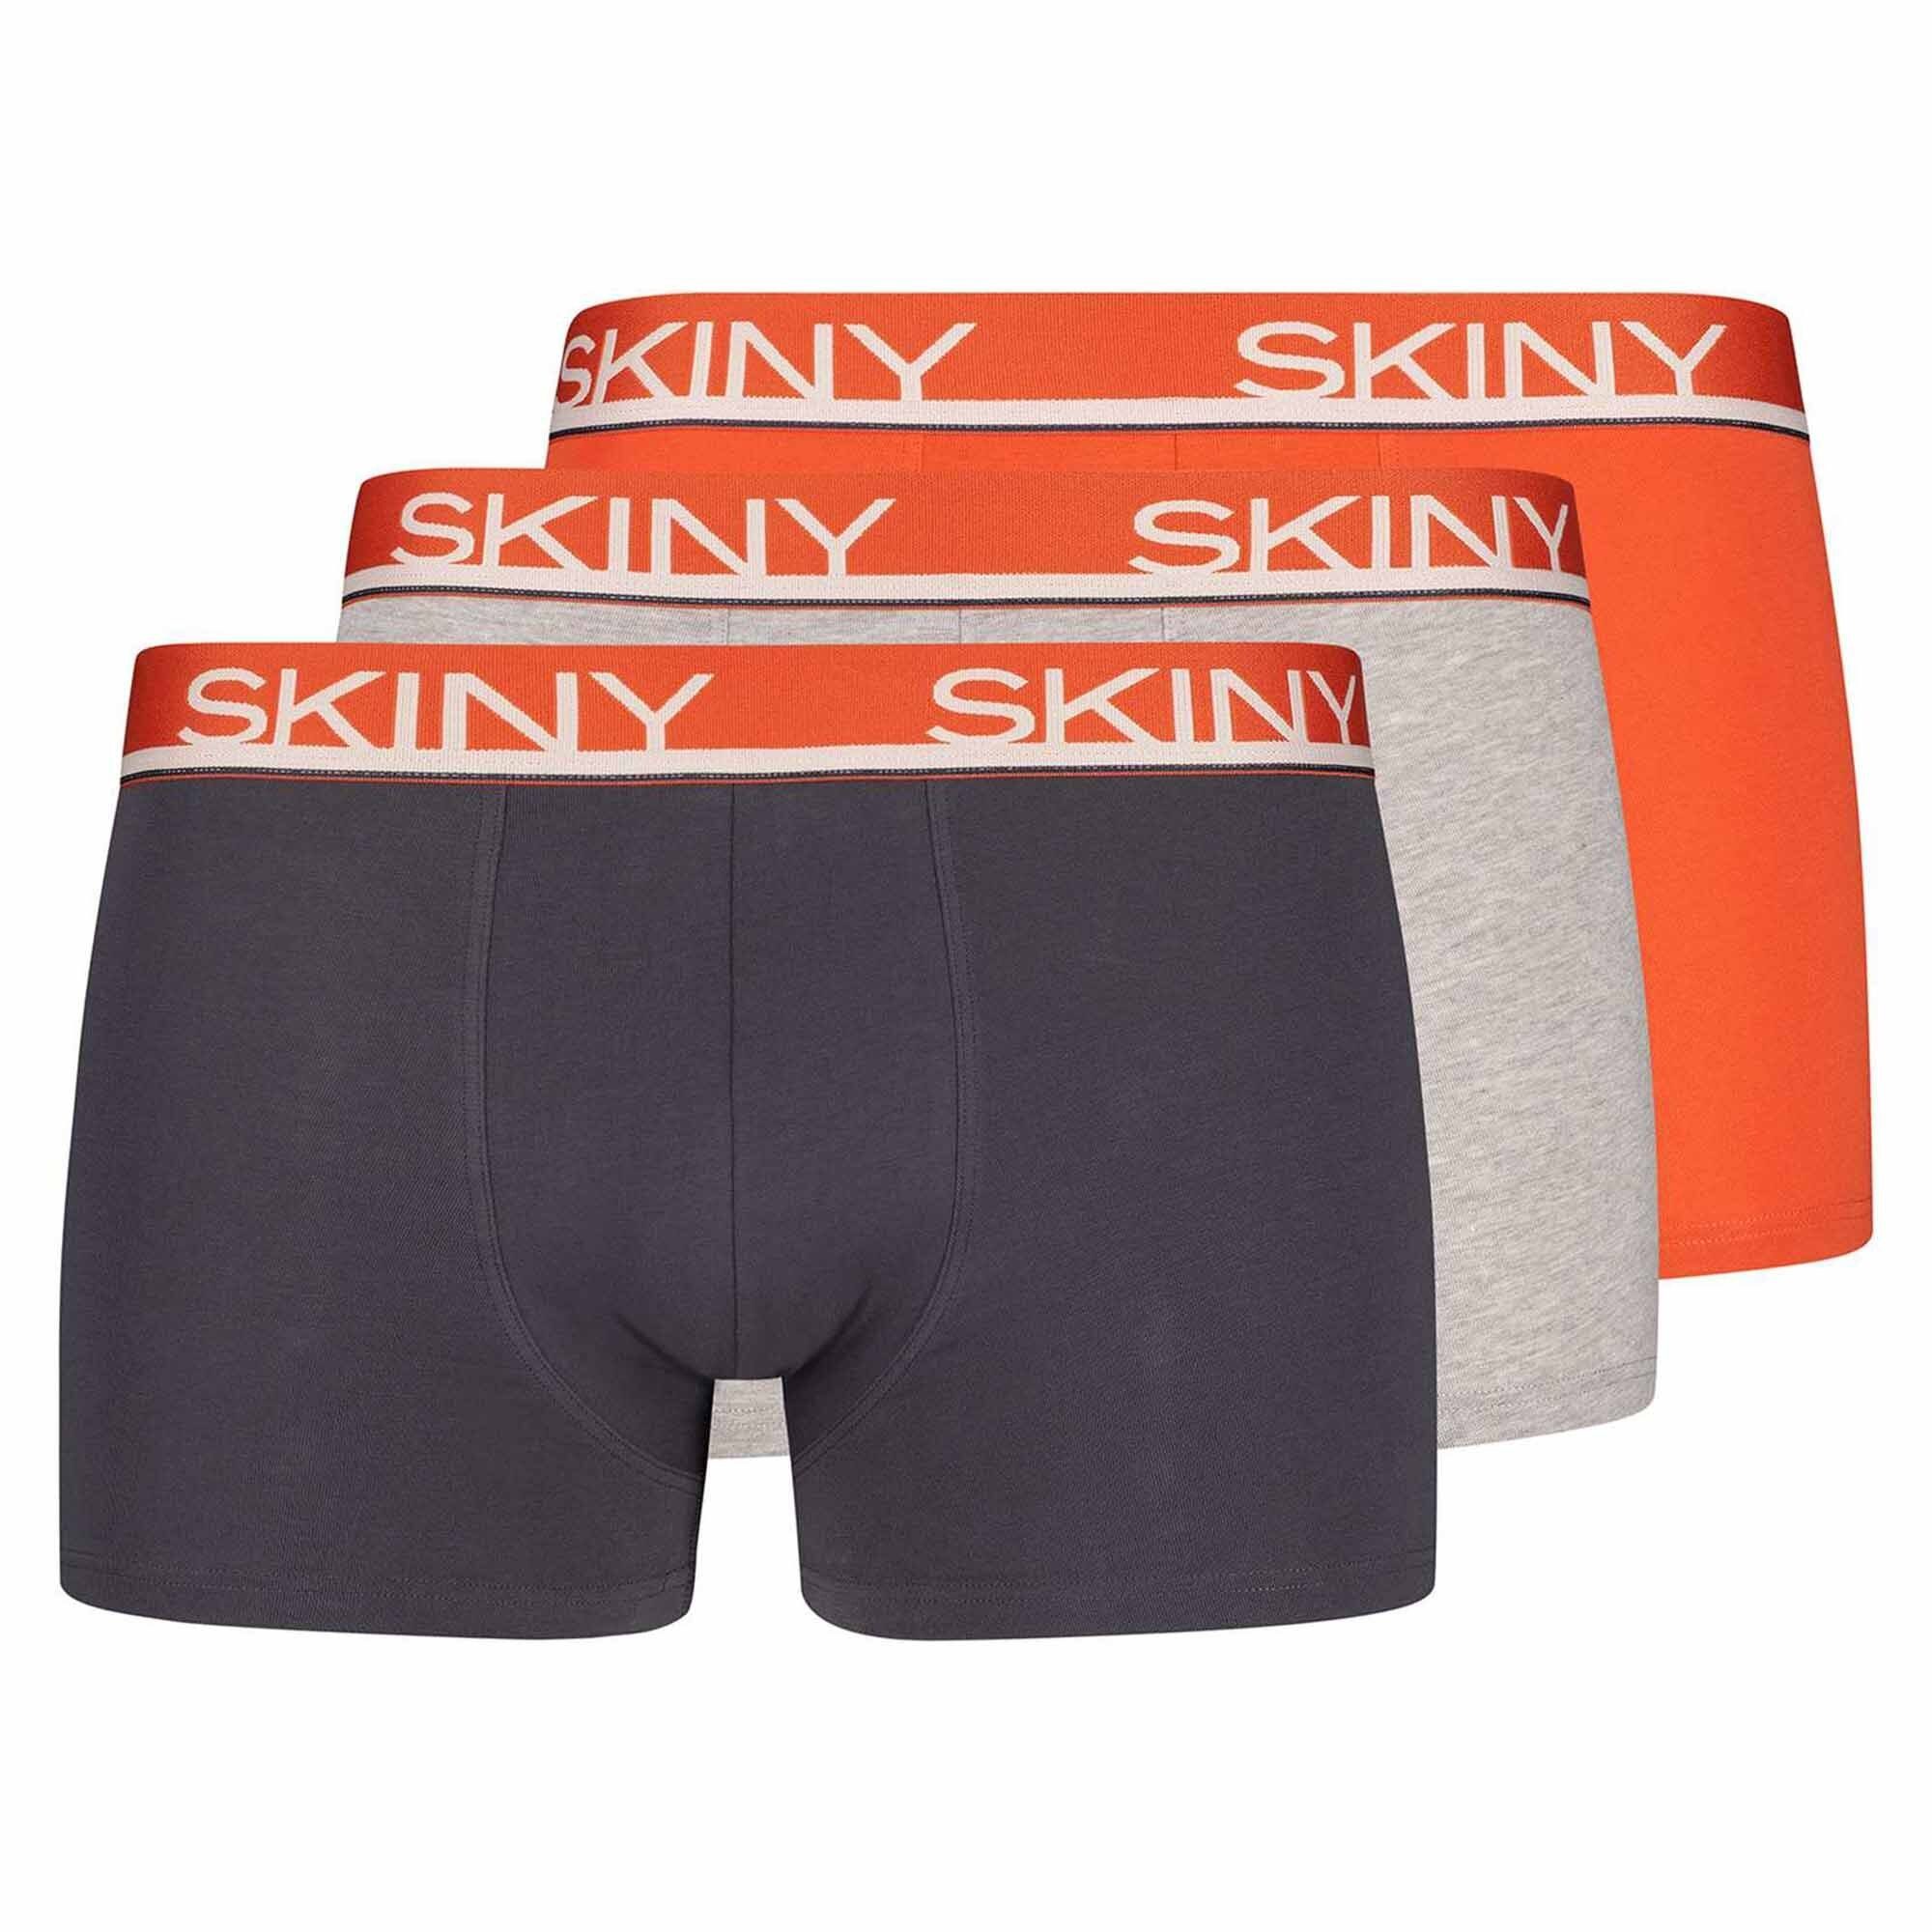 Skiny Boxer Herren Boxer Shorts 3er Pack - Trunks, Pants Grau/Orange